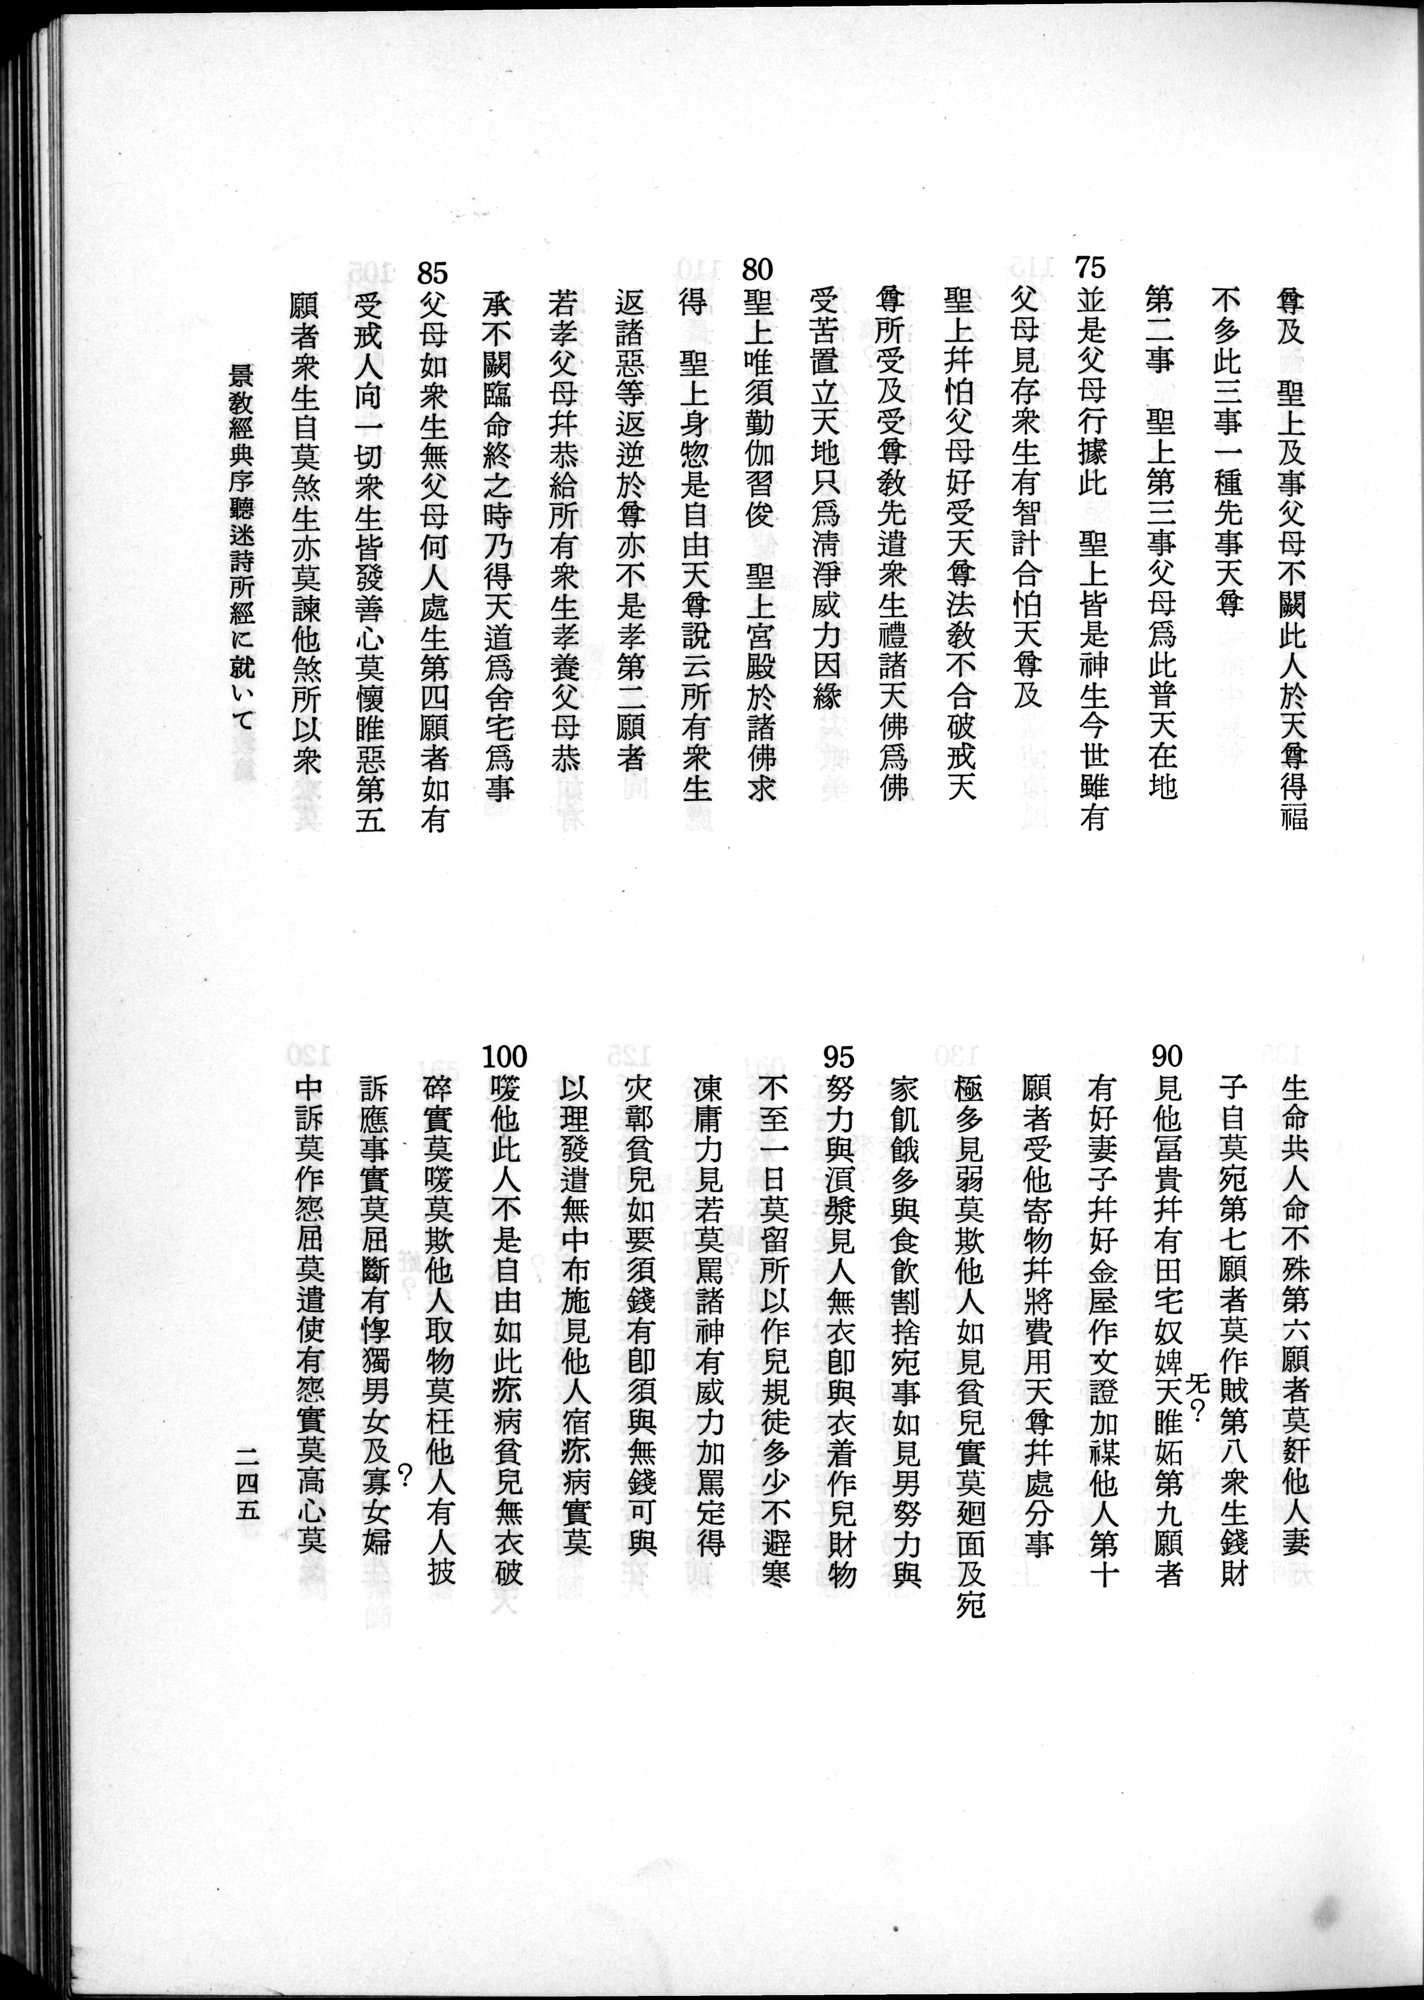 羽田博士史学論文集 : vol.2 / 307 ページ（白黒高解像度画像）